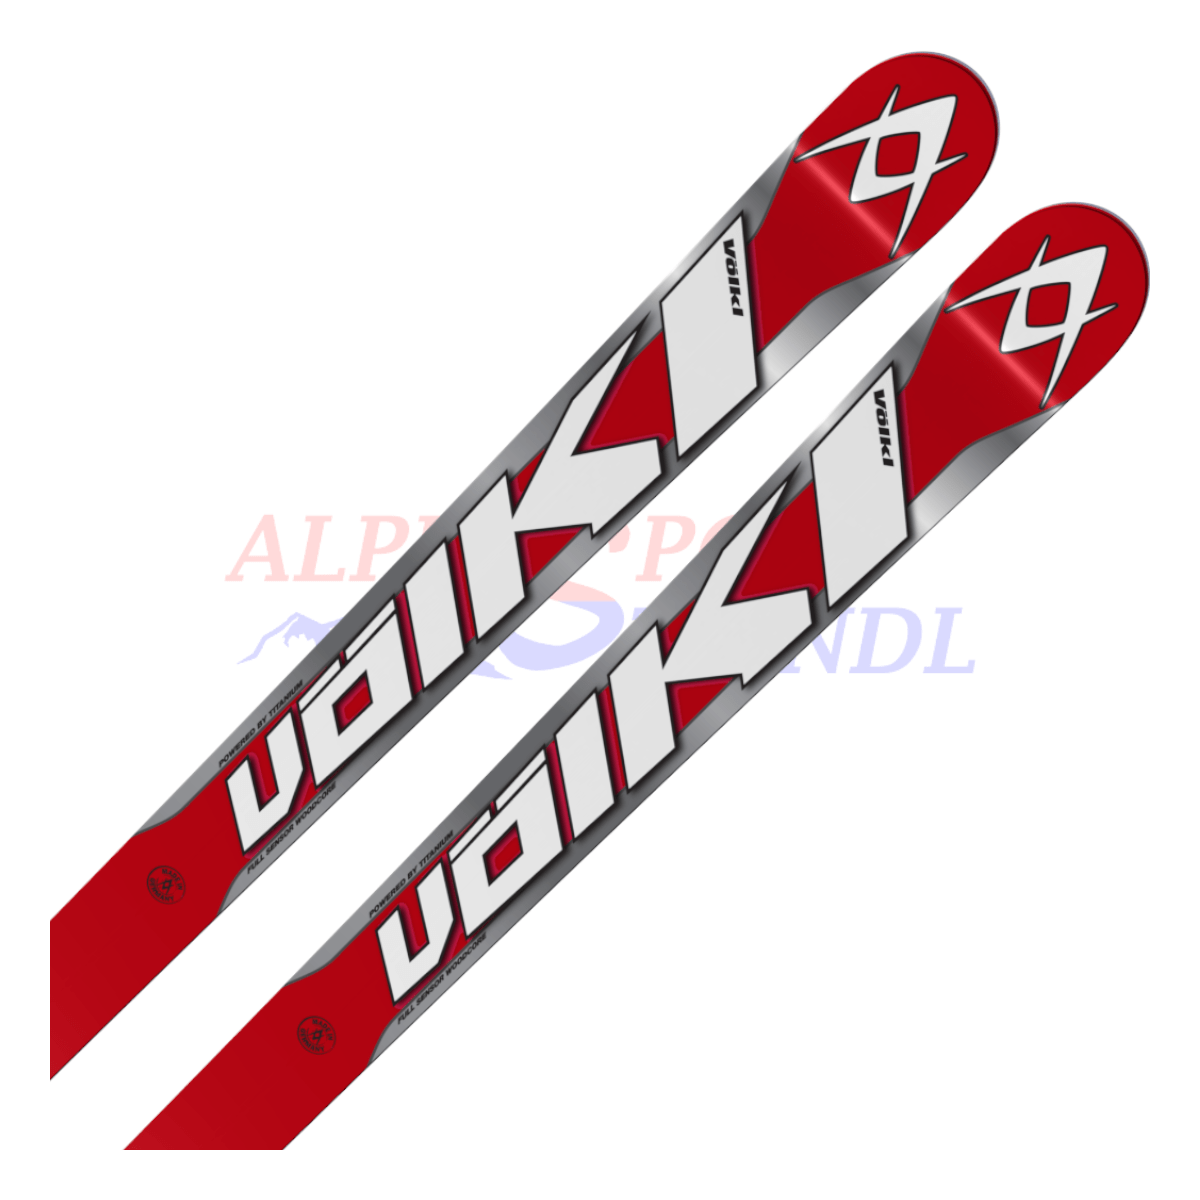 Völkl Racetiger Super-G aus dem Jahre 2013/14 in der Farbe Rot-Silber, Ansicht des oberen Teils des Skis